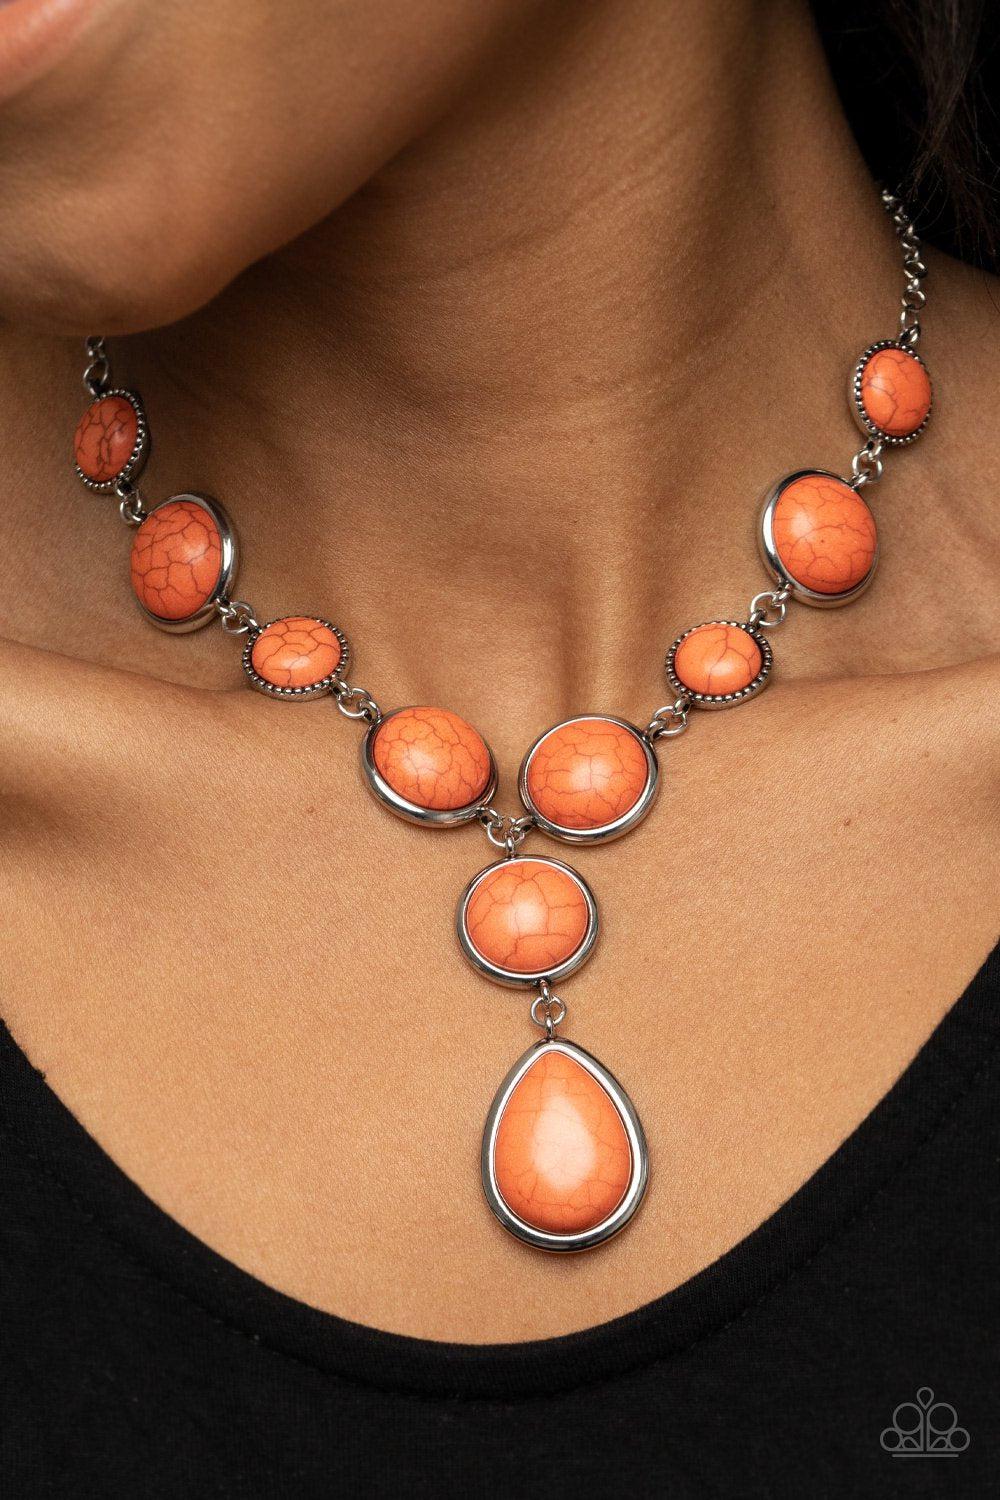 Terrestrial Trailblazer Orange Stone Necklace - Paparazzi Accessories- model - CarasShop.com - $5 Jewelry by Cara Jewels